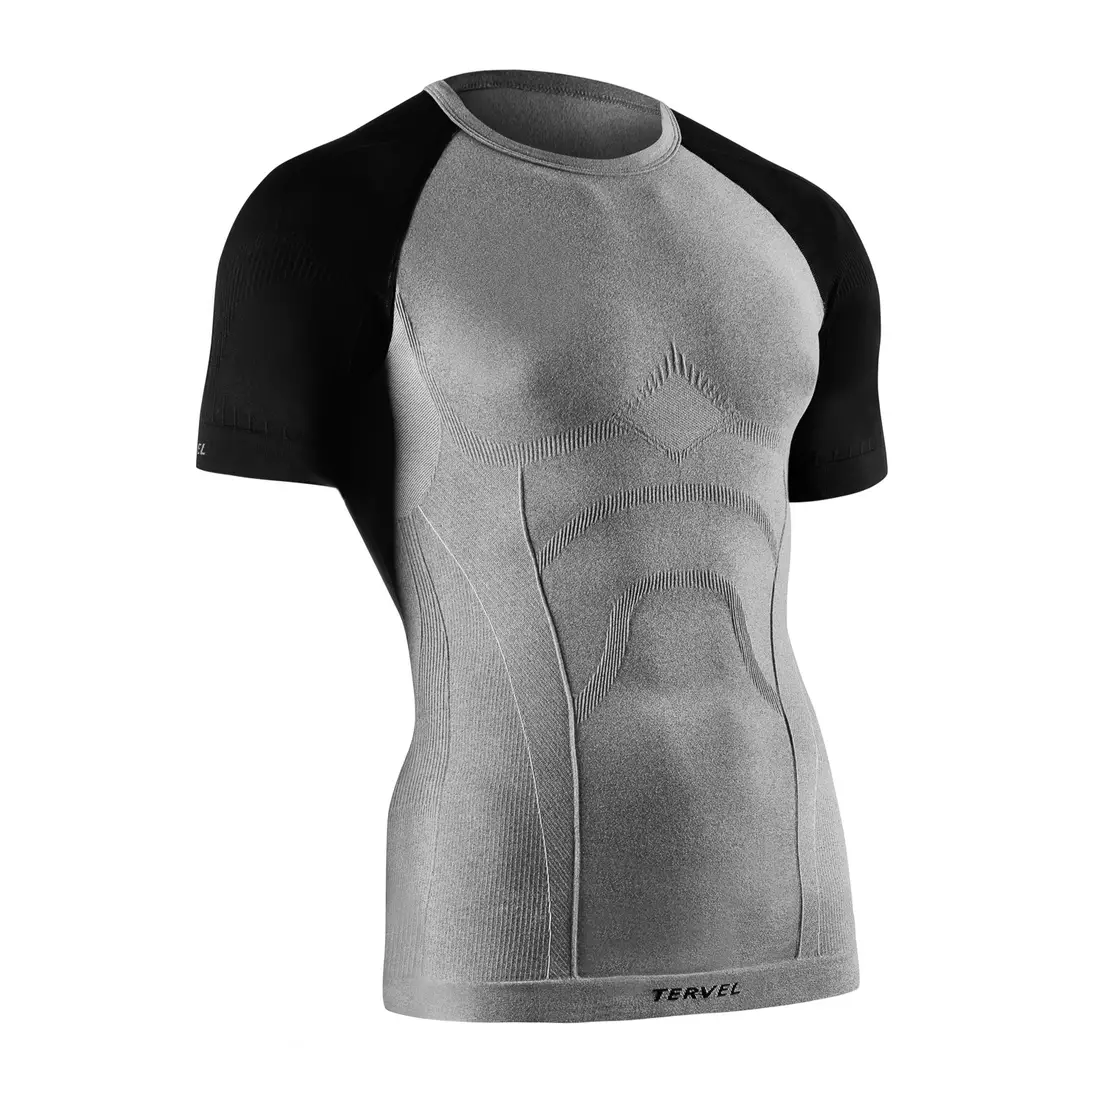 TERVEL COMFORTLINE 1102 - men's thermal T-shirt, short sleeves, color: Melange-black